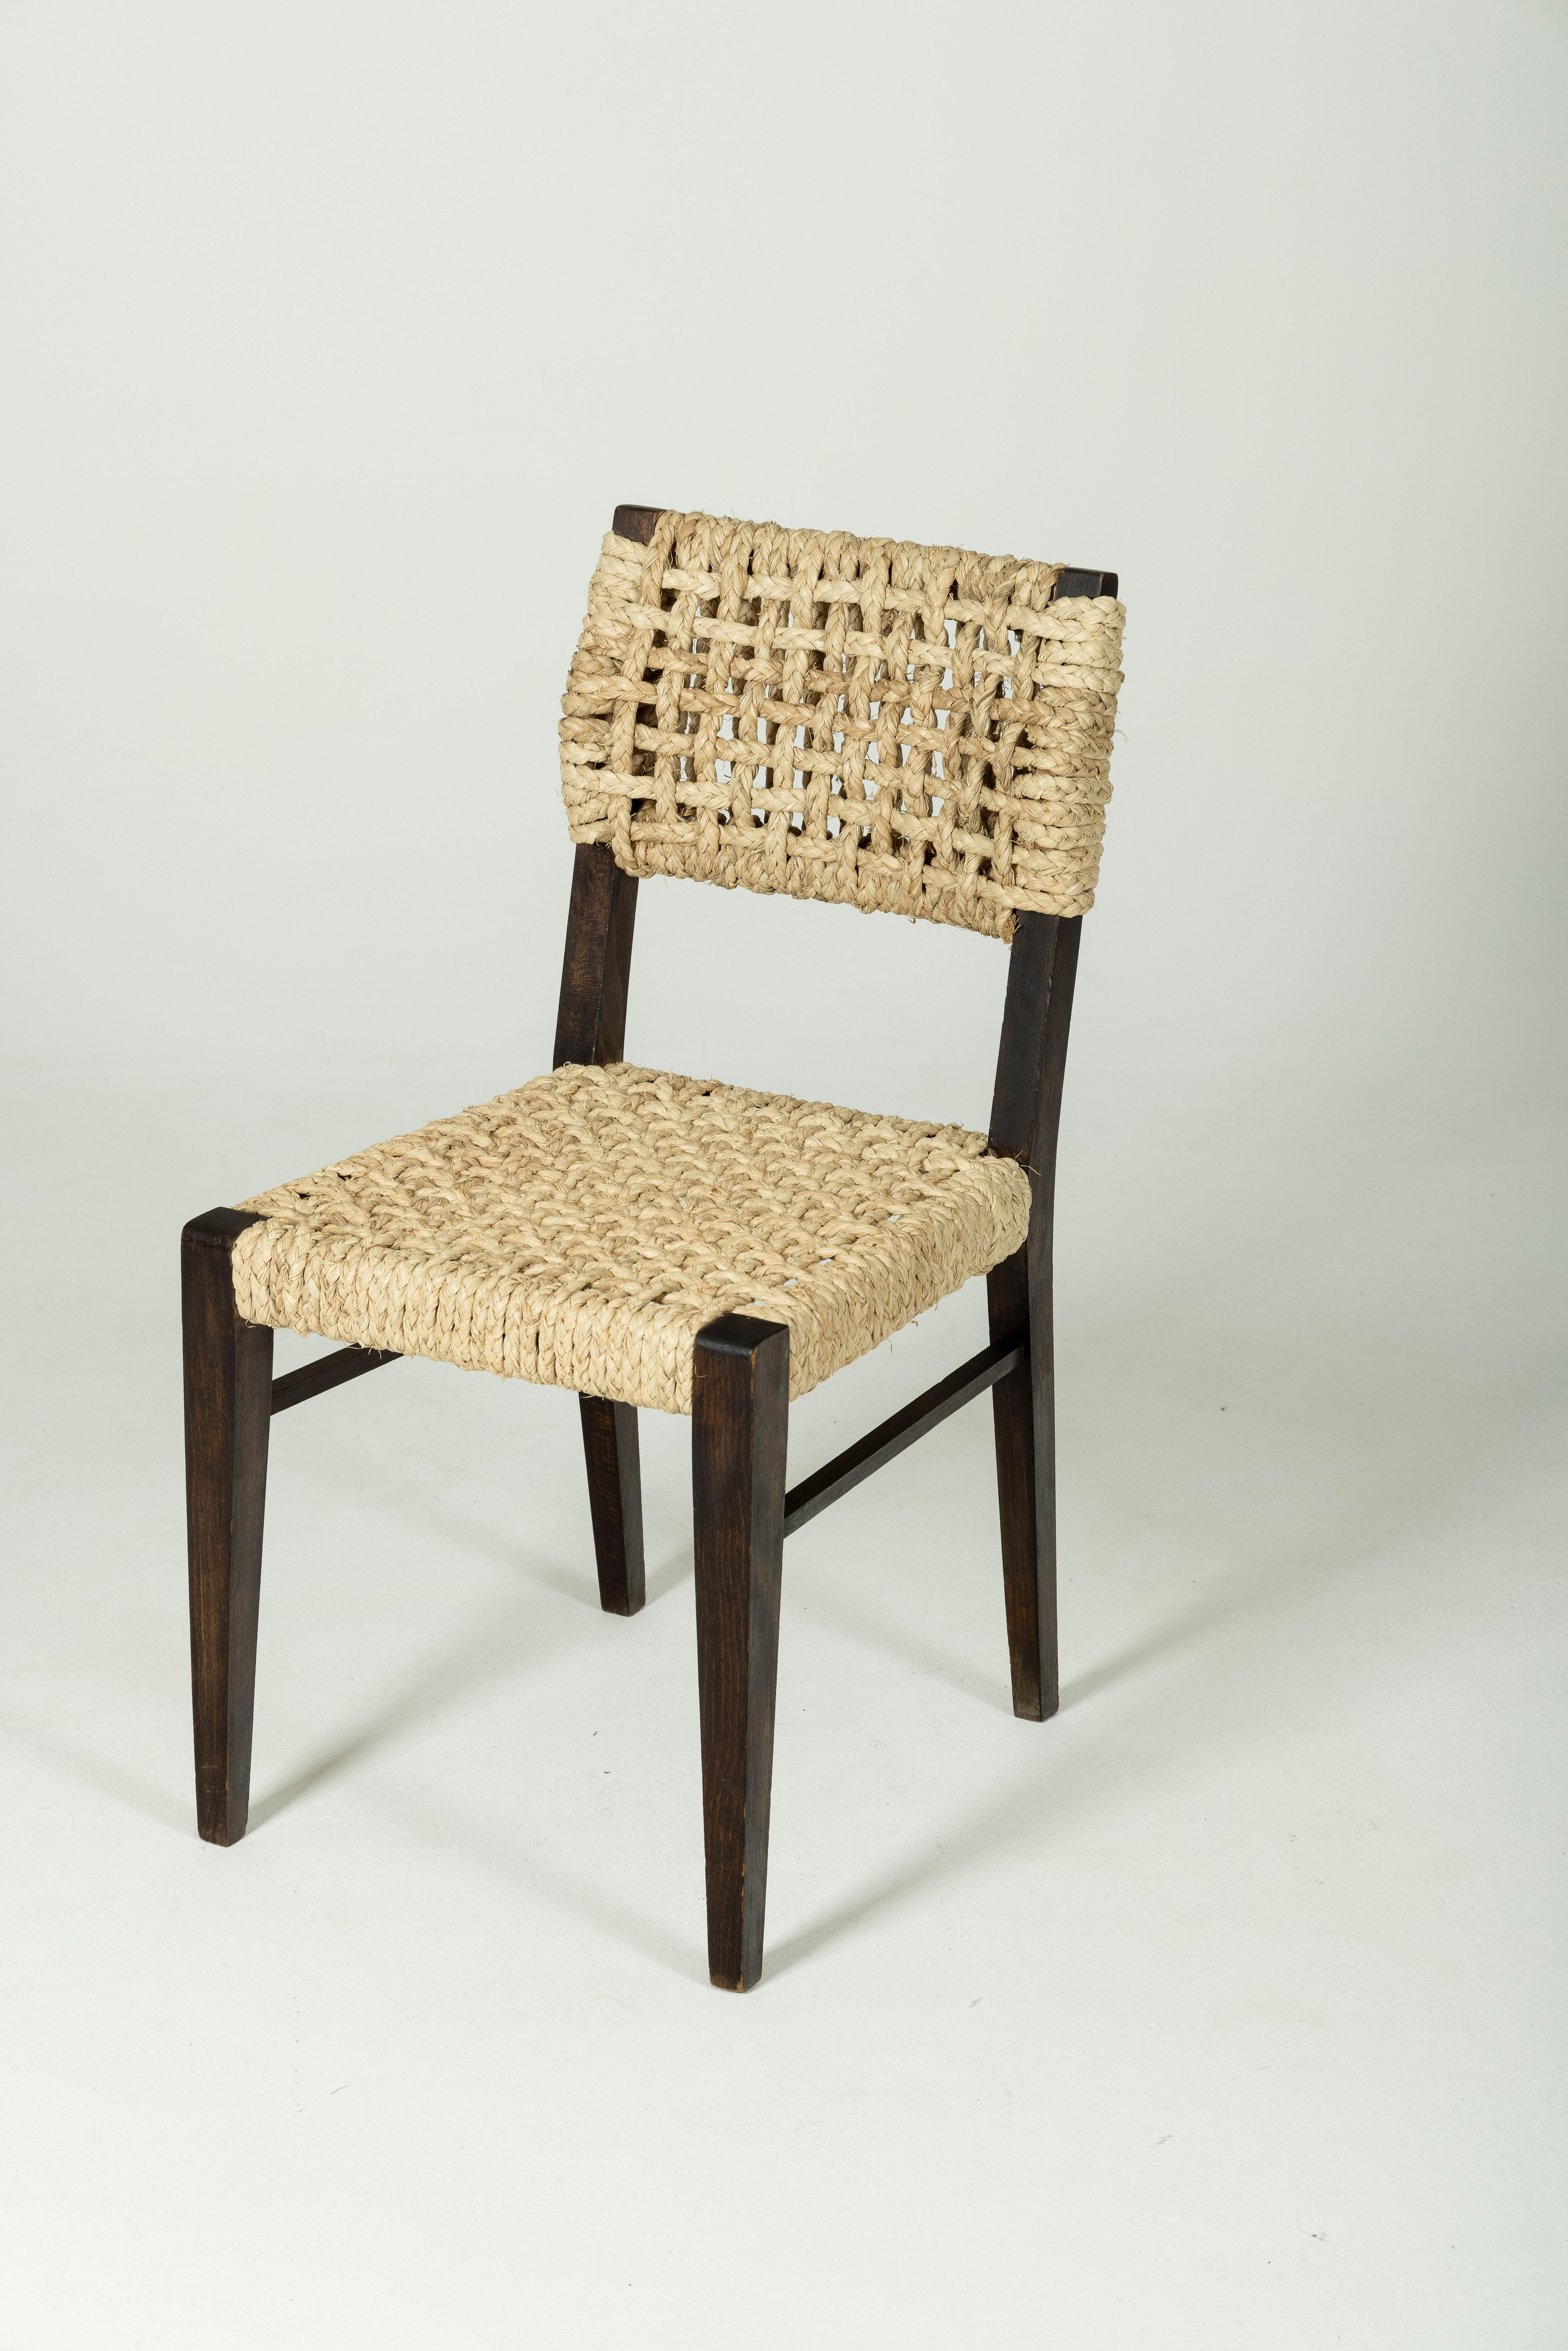 Chaise en corde du couple de designers Adrien Audoux et Frida Minet pour Vibo Vesoul, des années 1950. L'assise et le dossier sont en chanvre, et le cadre est en bois foncé. Objet vintage en très bon état.
LP372